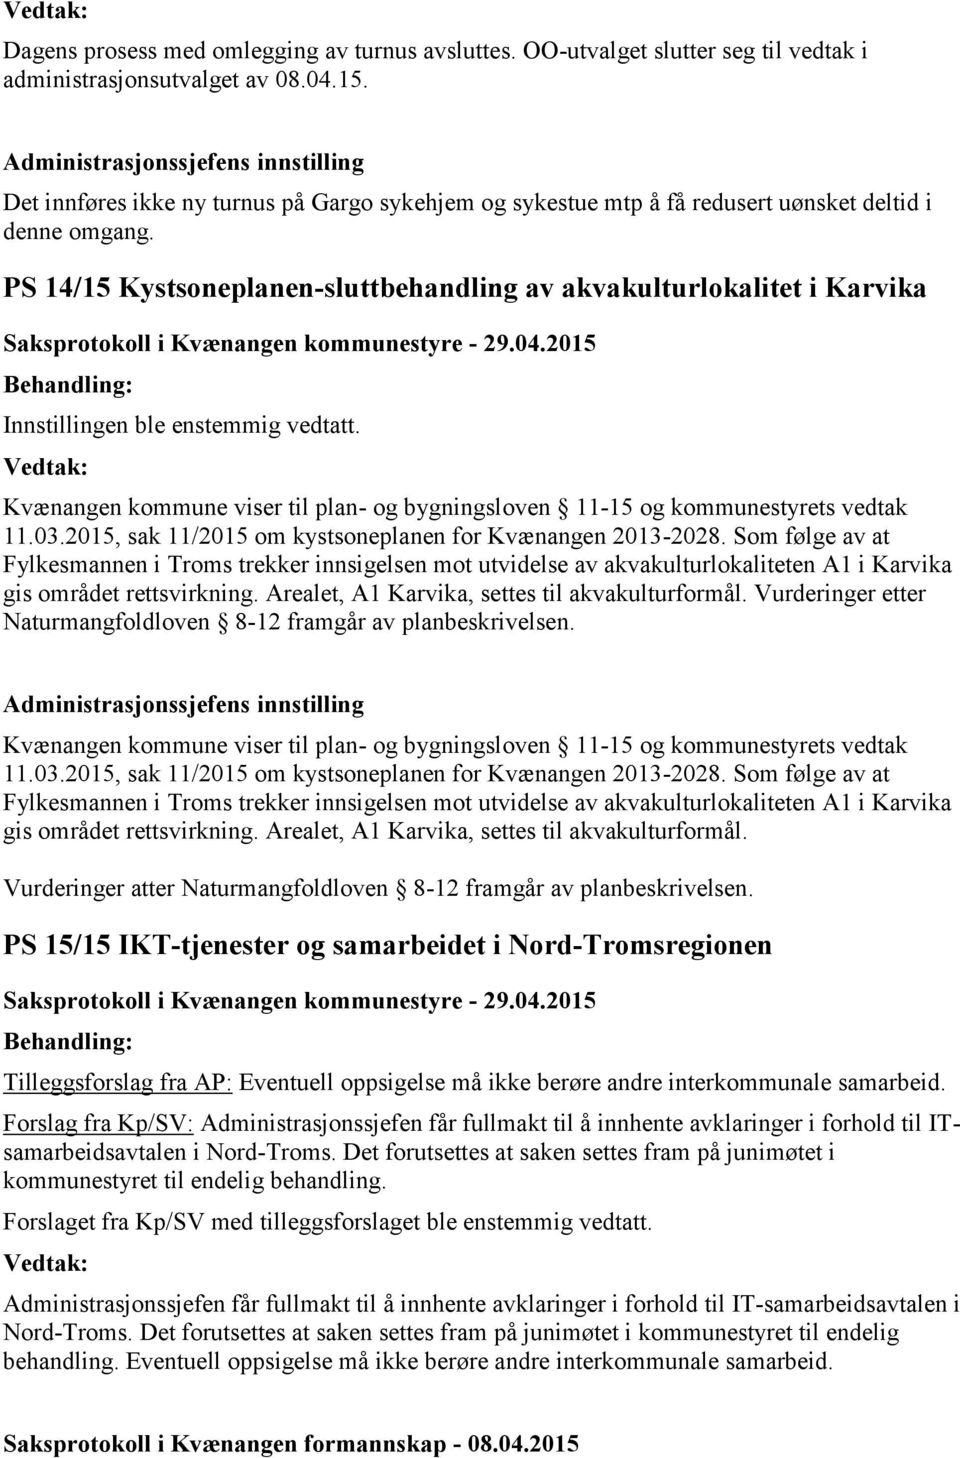 PS 14/15 Kystsoneplanen-sluttbehandling av akvakulturlokalitet i Karvika Innstillingen ble enstemmig vedtatt. Kvænangen kommune viser til plan- og bygningsloven 11-15 og kommunestyrets vedtak 11.03.